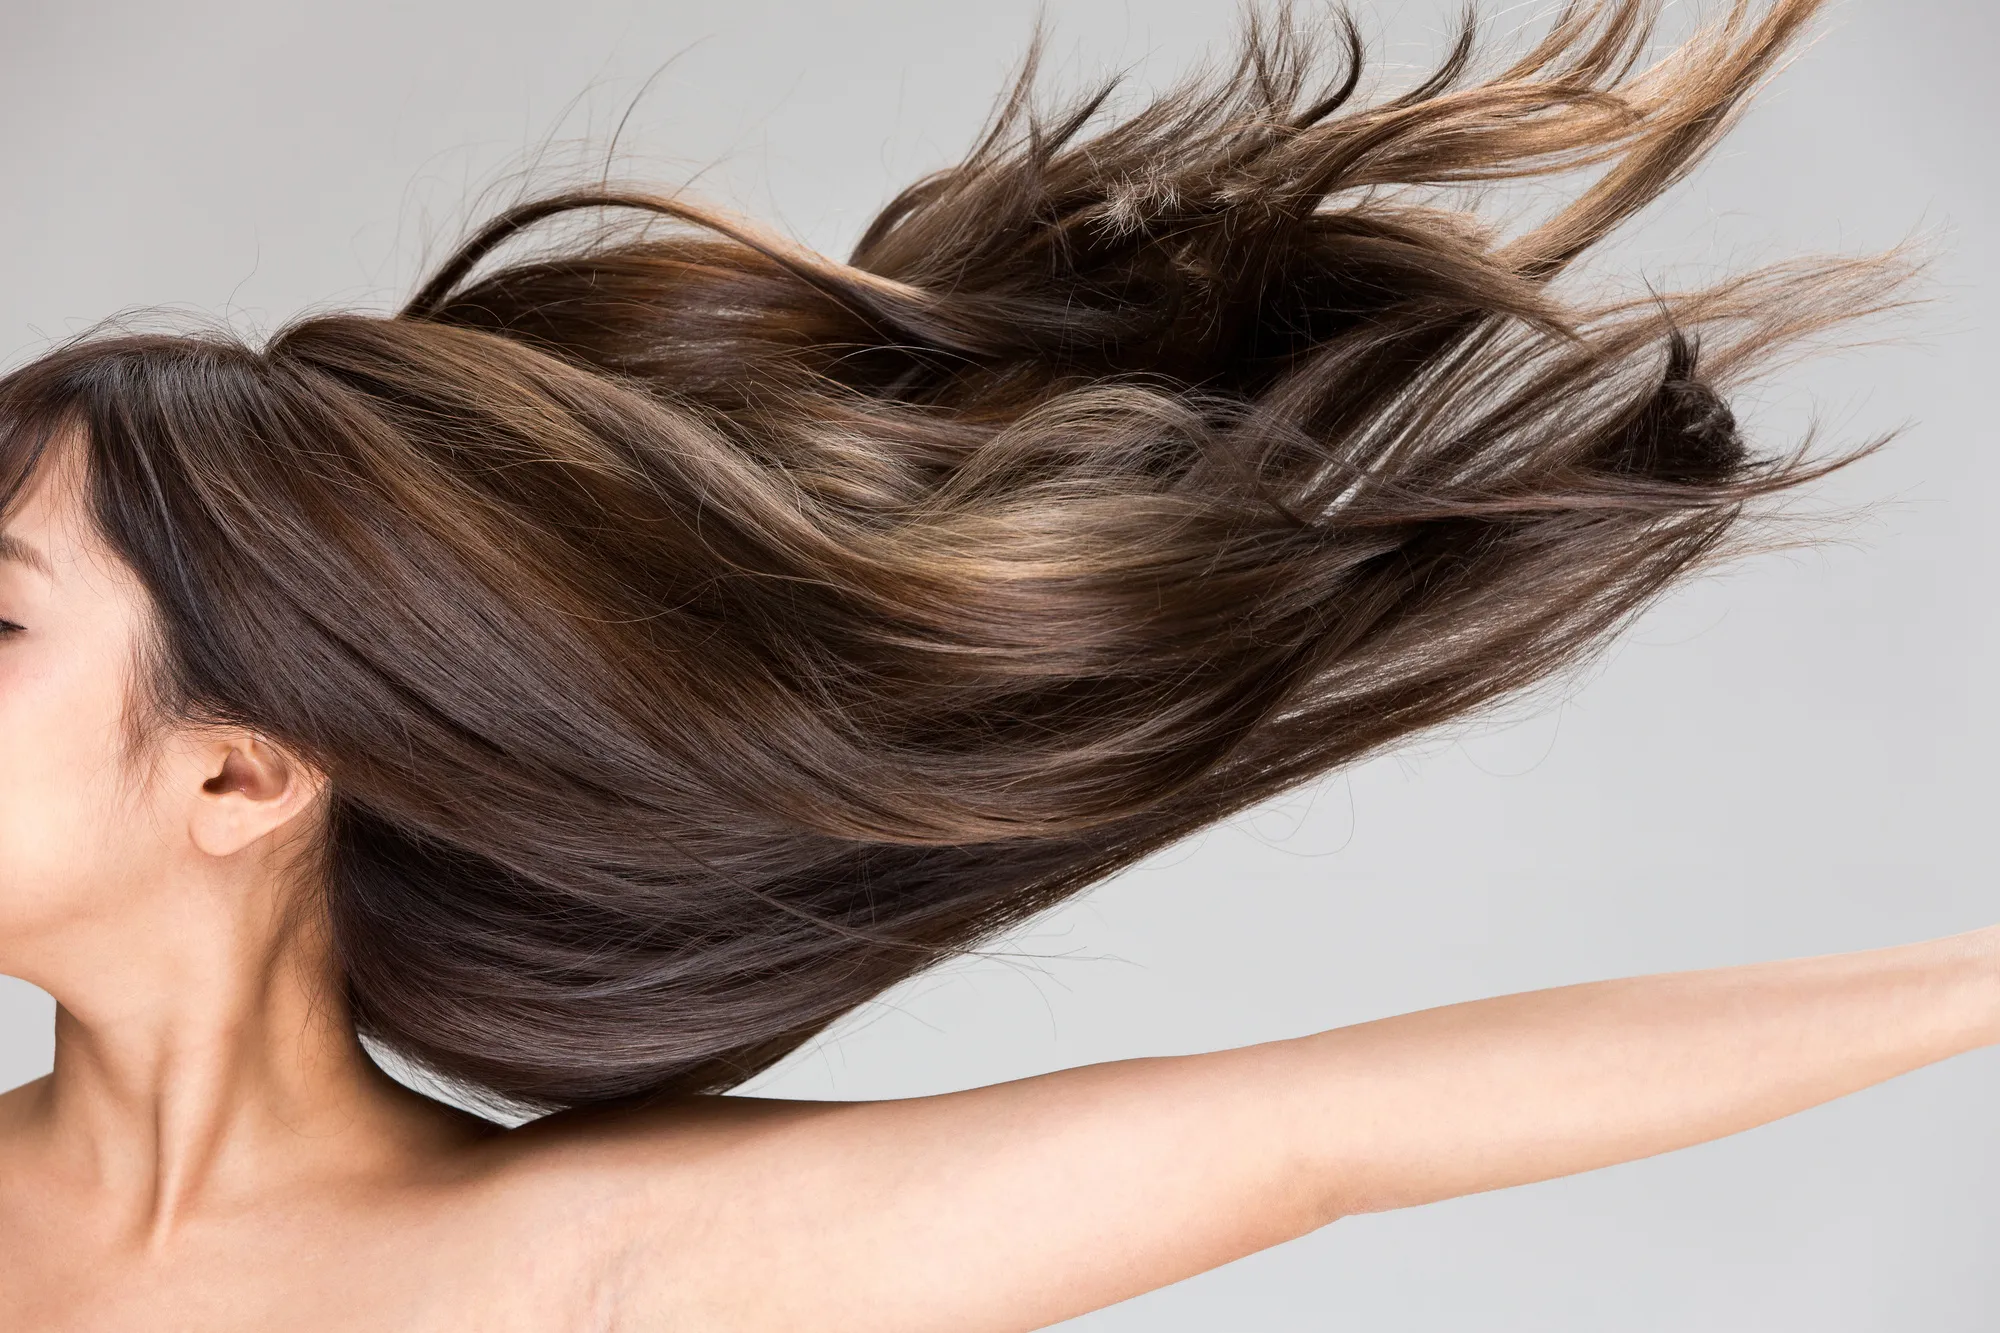 Молекулярная косметика в уходе за волосами: индивидуальный подход к каждому волосу